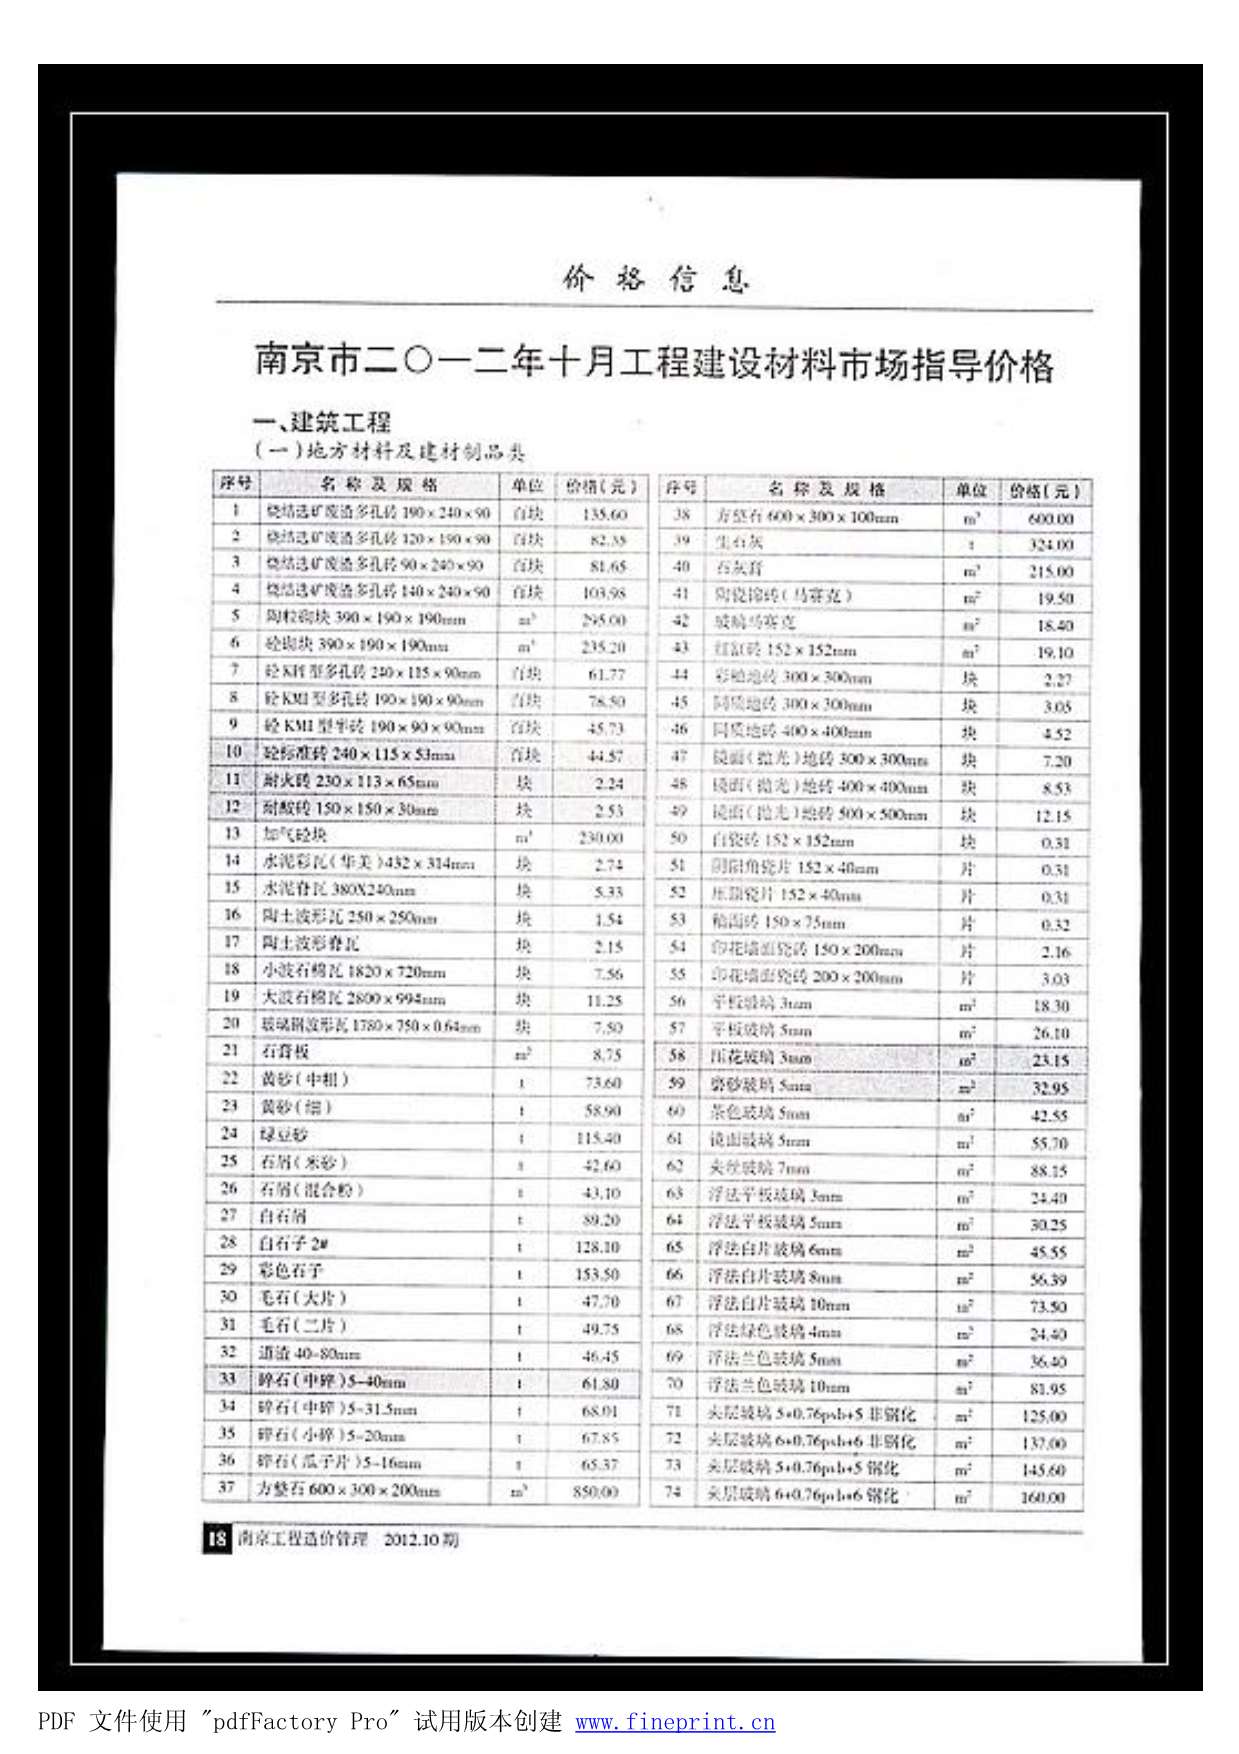 南京市2012年10月工程信息价_南京市信息价期刊PDF扫描件电子版